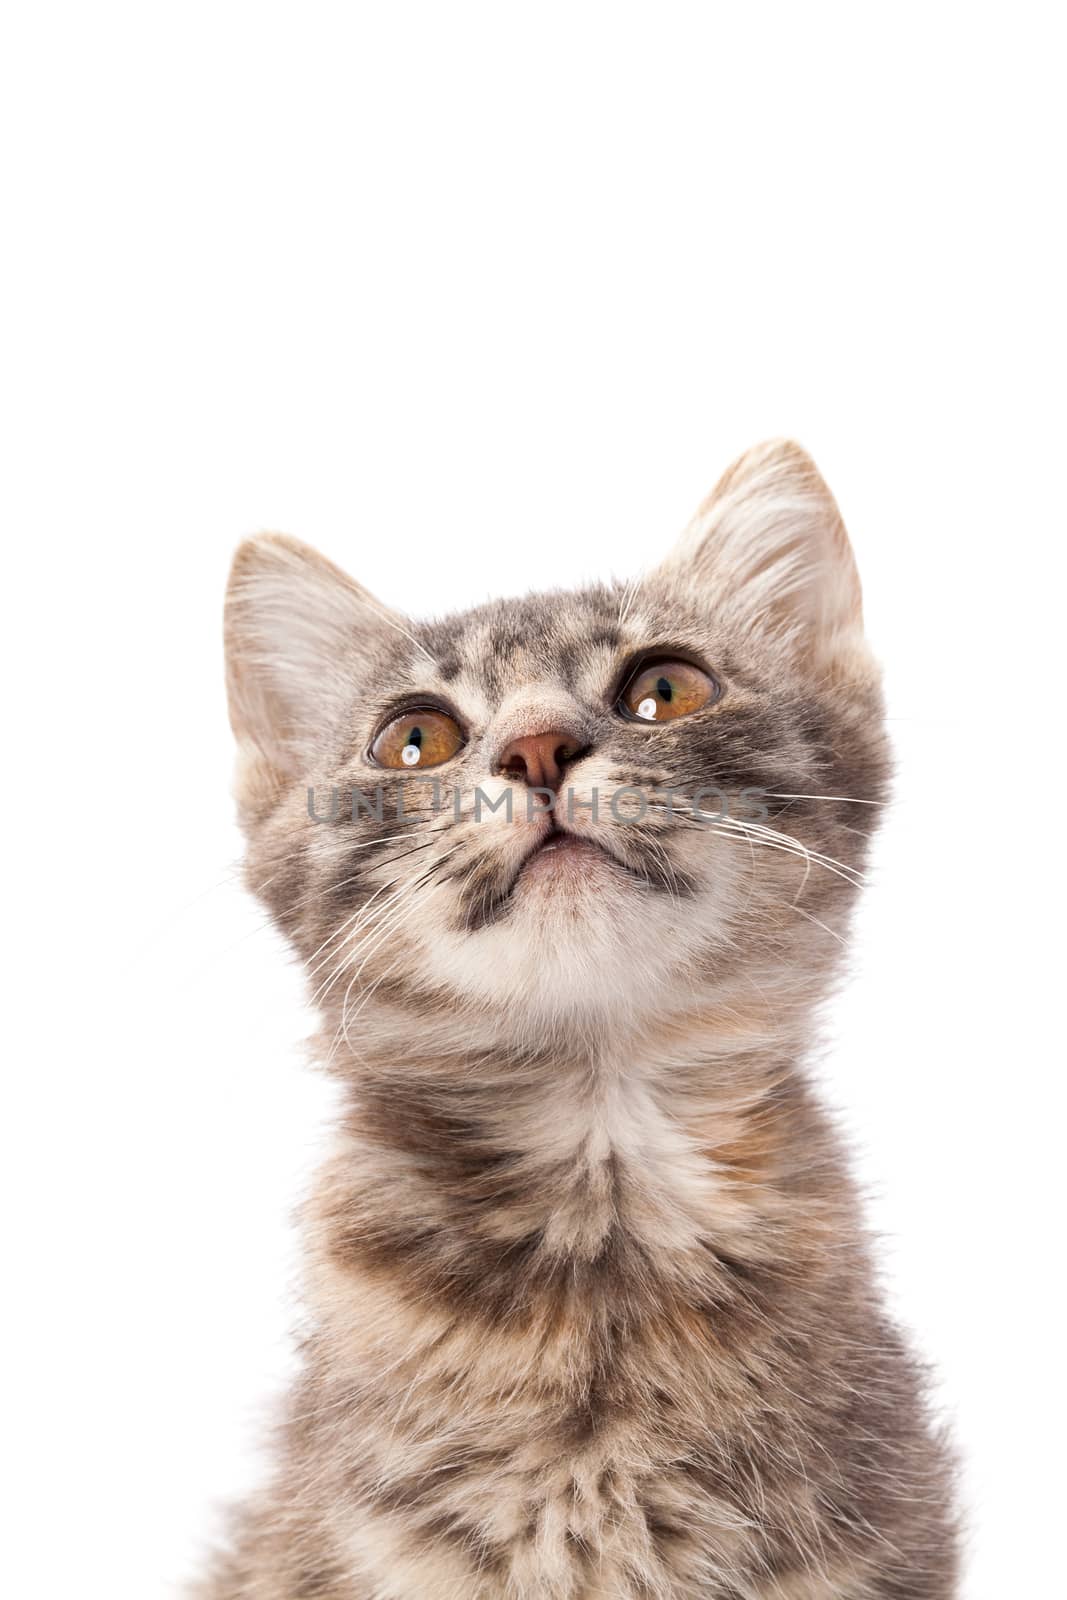 Studio portrait of adorable young grey kitten